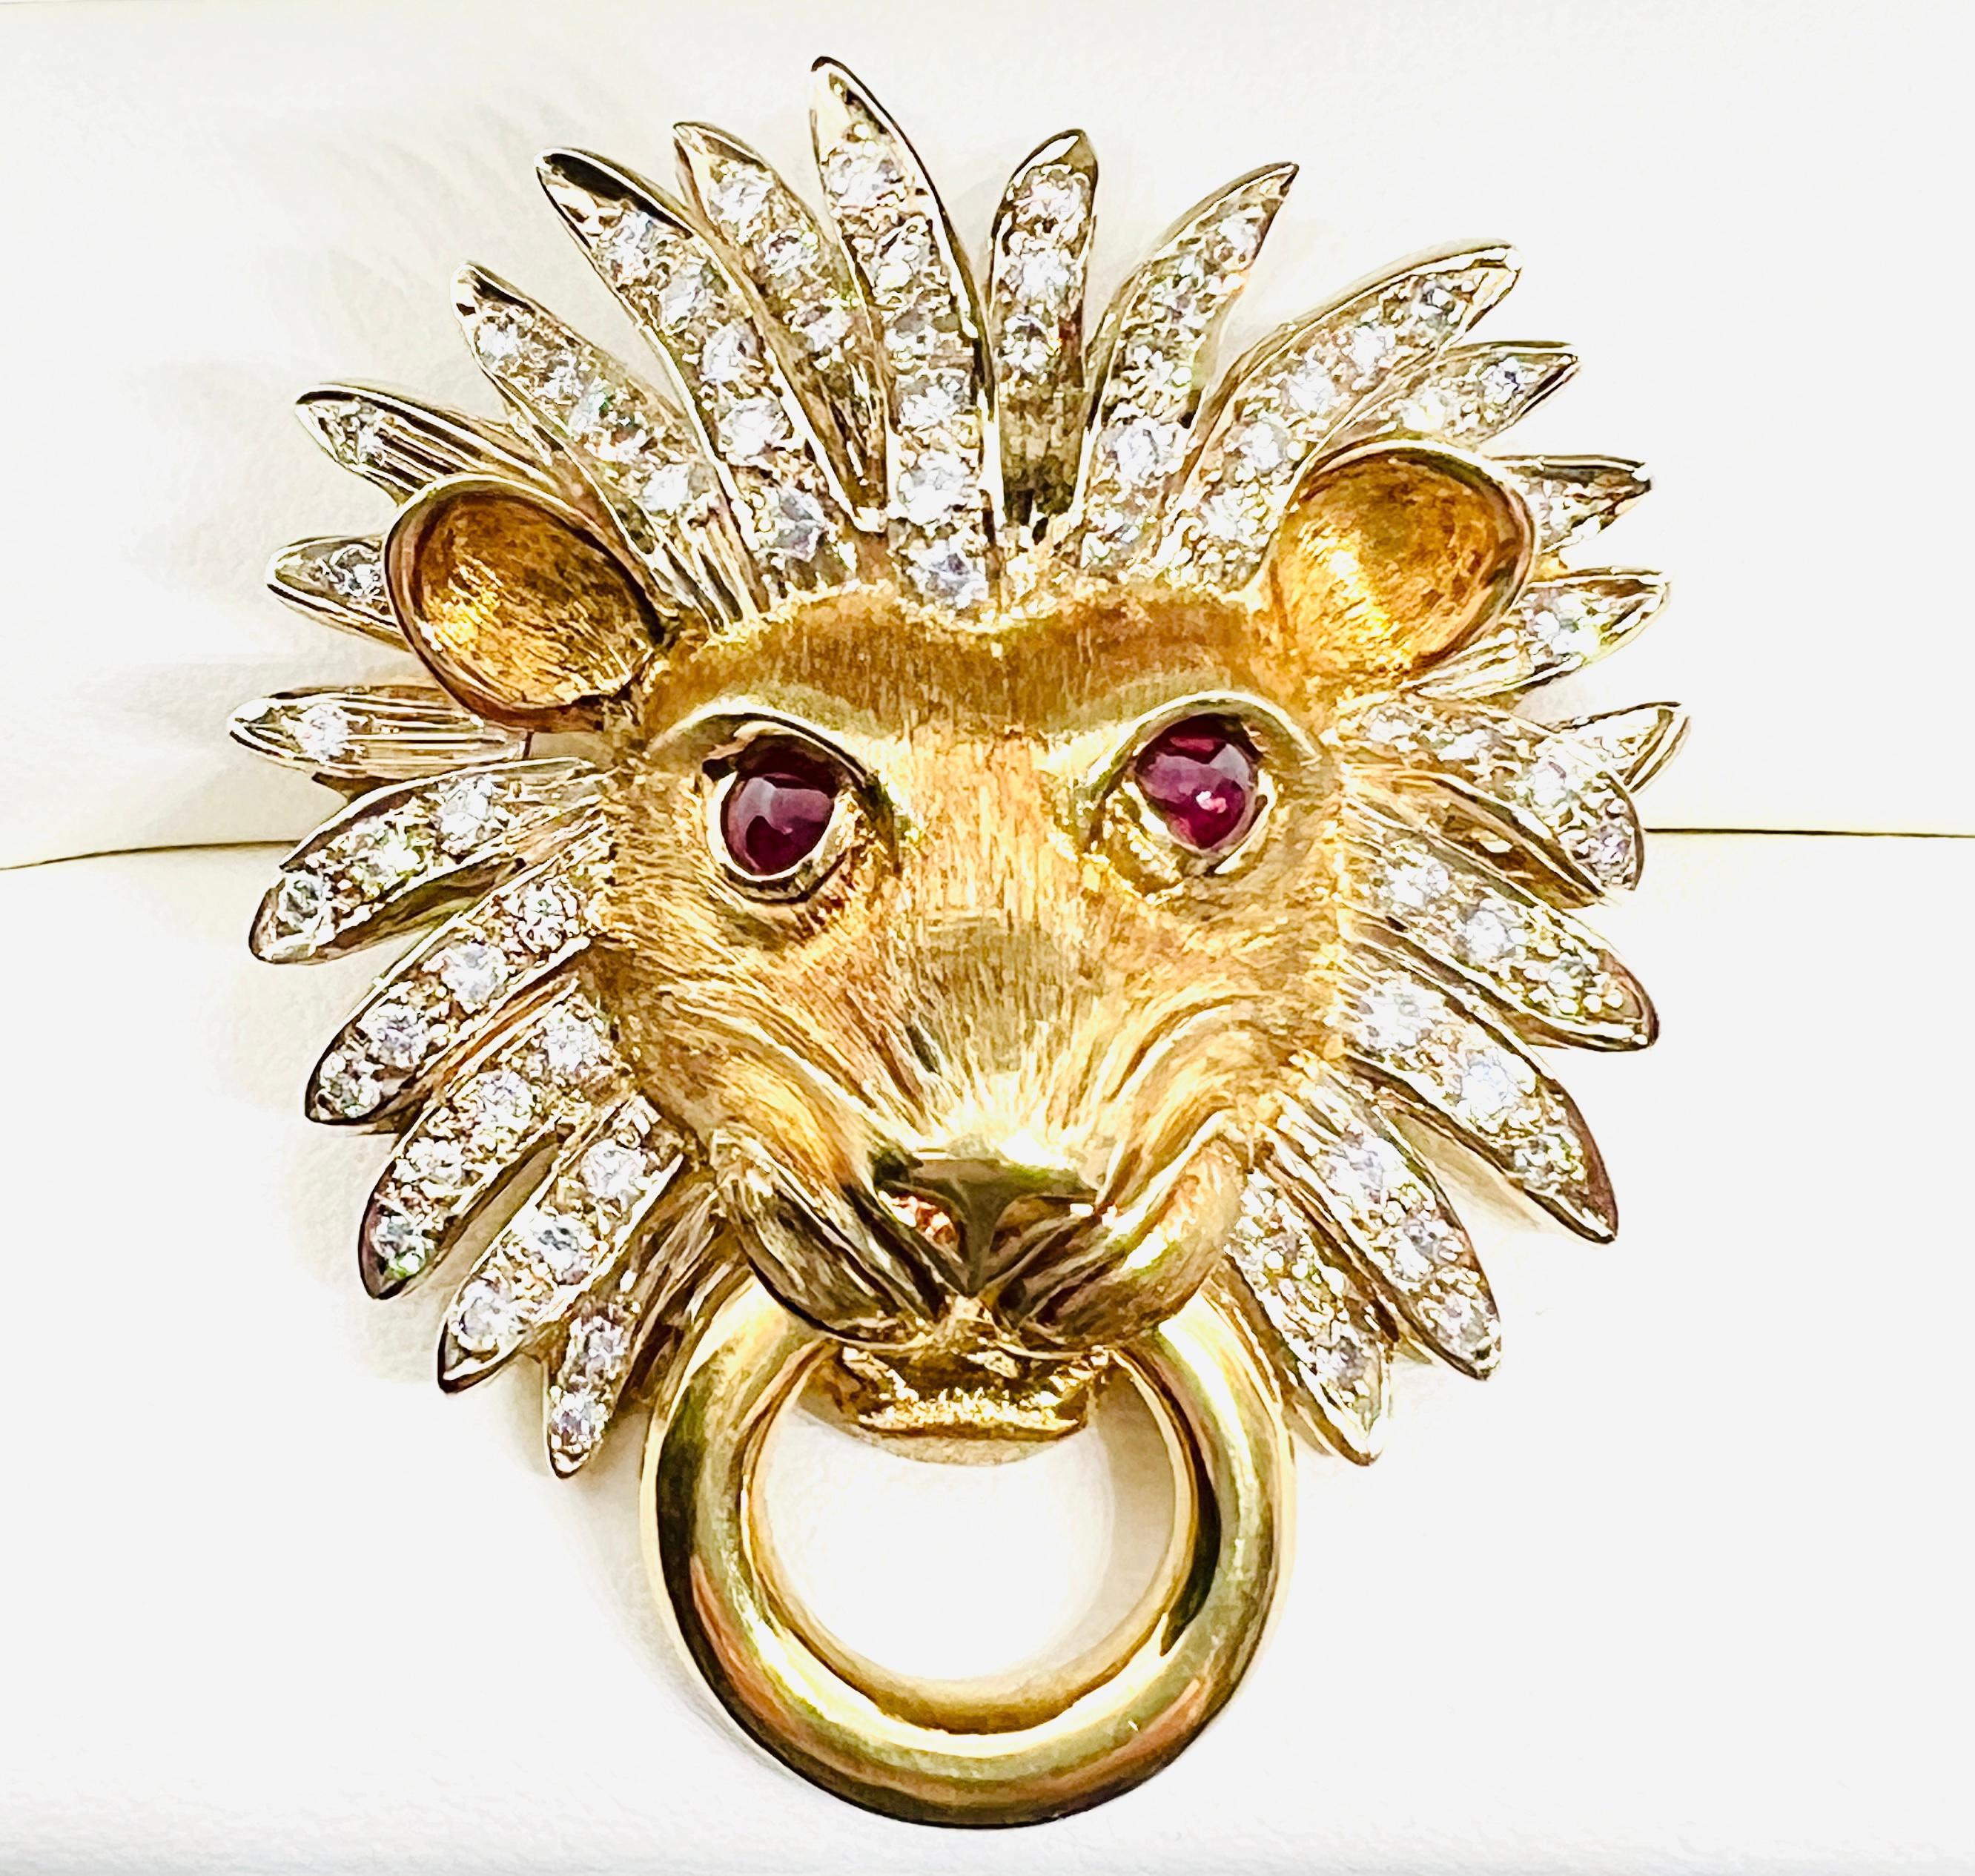 Gorgeous Adler 18K Gelbgold Lionshead Doorknocker Anhänger / enhancer. Dieses Vintage-Stück weist 76 Diamanten in der Löwenmähne und zwei Cabochon-Rubine als Augen auf. Das Stück misst 1,75 Zoll mal 1,25 Zoll und wiegt 30,4 Gramm. Das Unternehmen